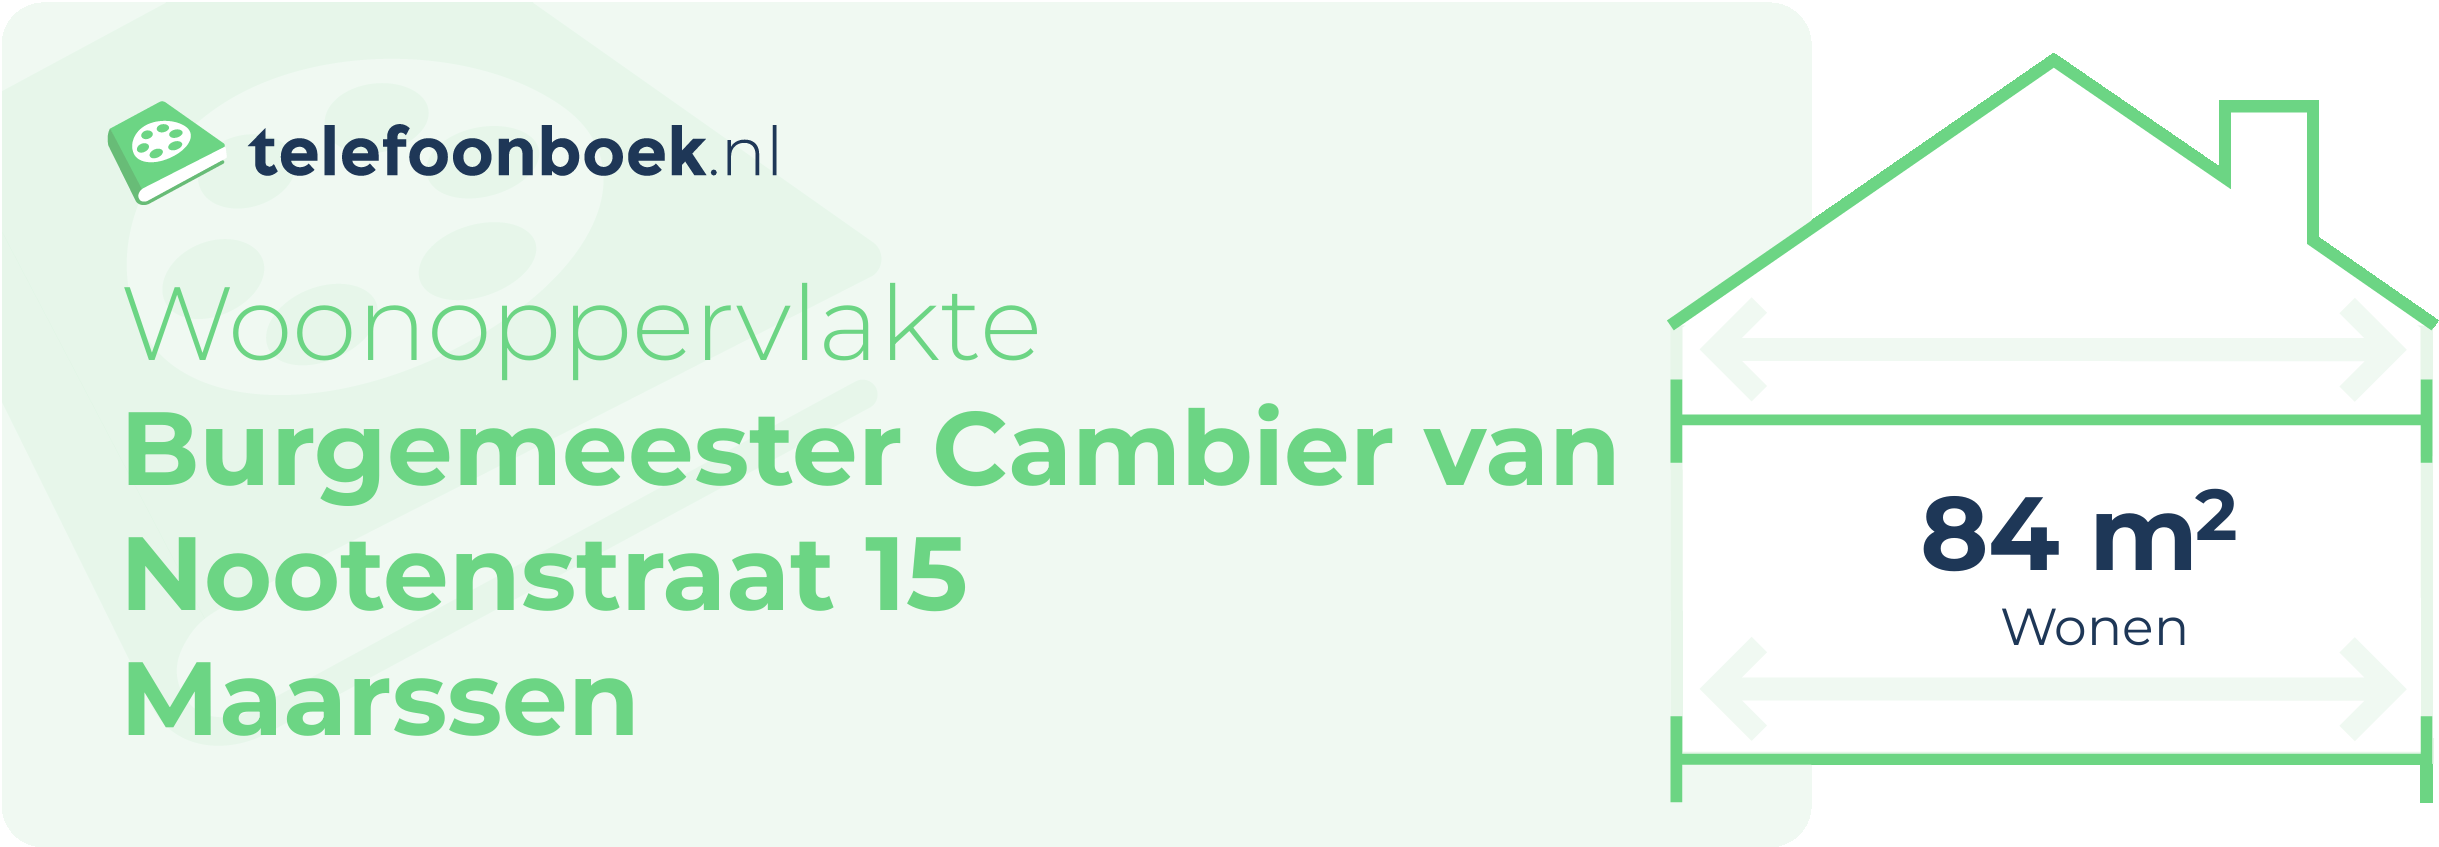 Woonoppervlakte Burgemeester Cambier Van Nootenstraat 15 Maarssen